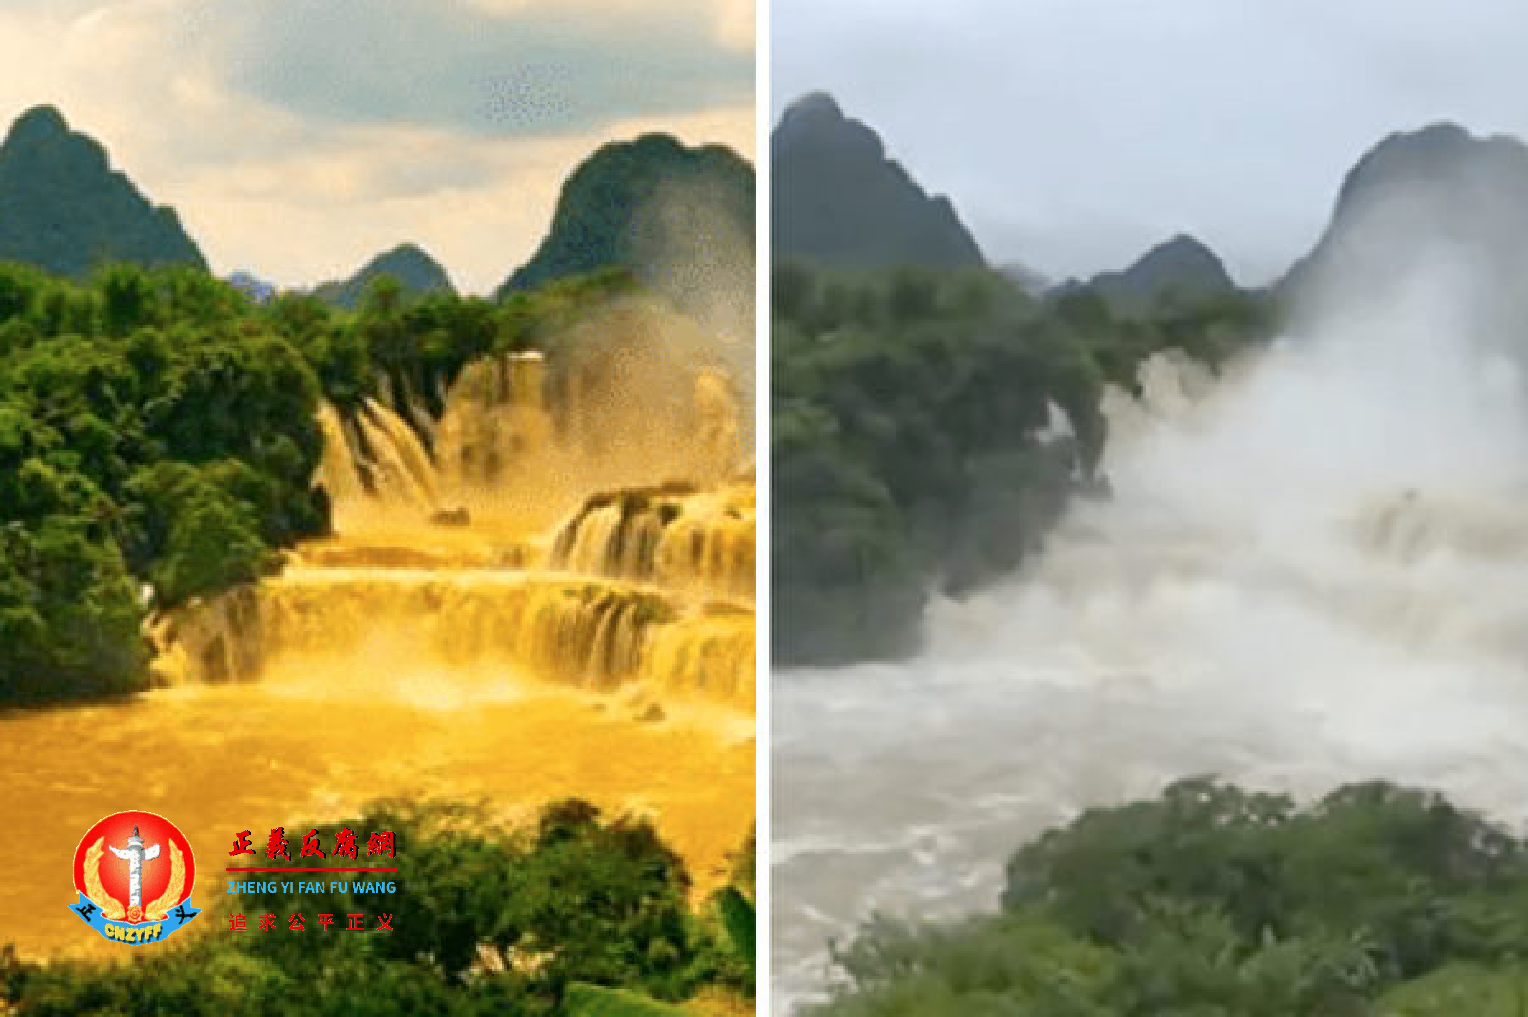 广西遭遇严重暴雨洪涝灾害，“黄金瀑布”竟成为了媒体焦点。左图为央视7月3日报道的经过美图处理的照片，右图片为媒体于2019年报道的视频截图。.png